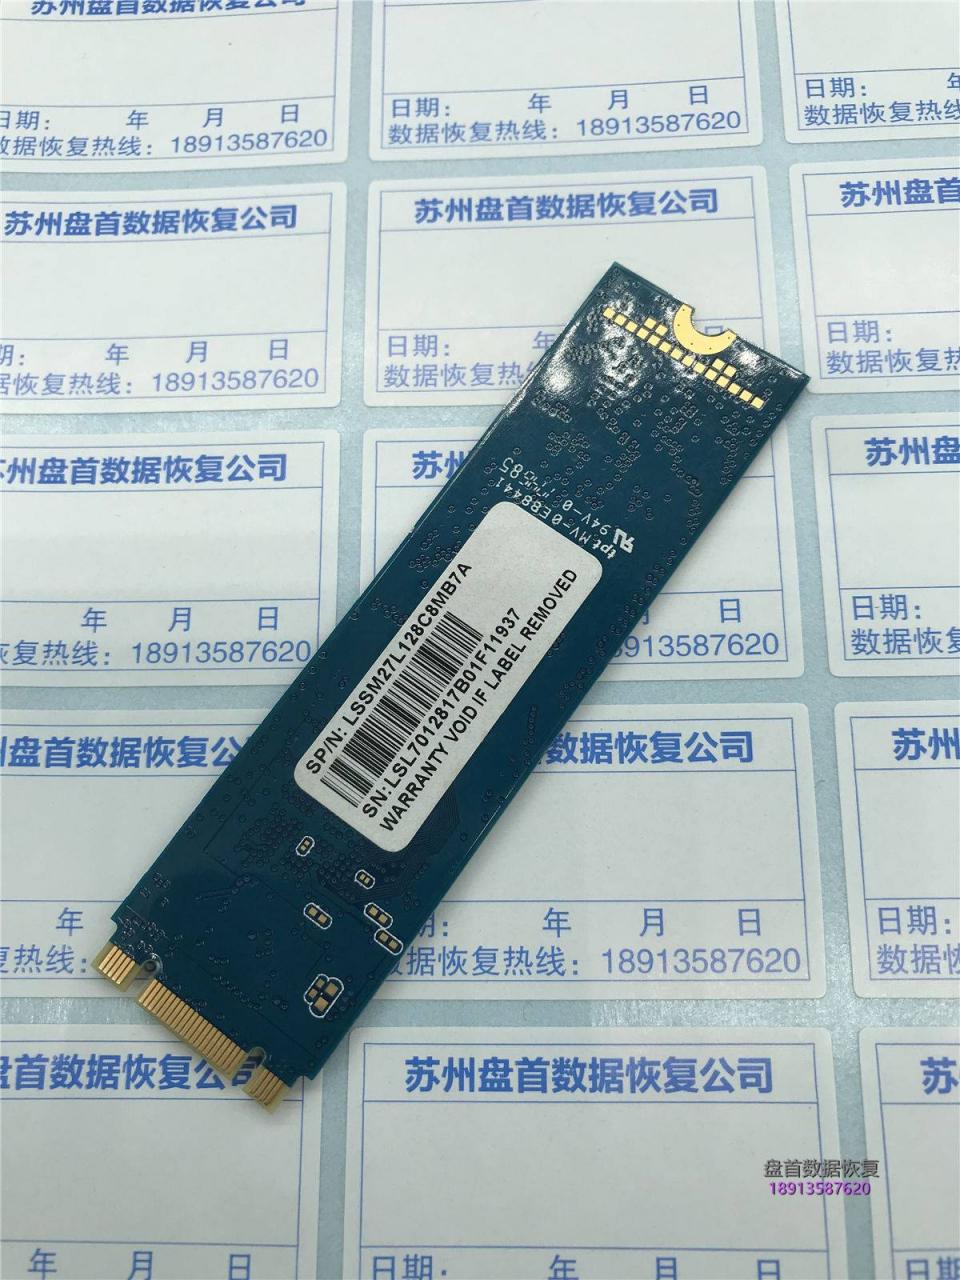 联想SL700掉盘变成SATAFIRM S11显示磁盘没有初始化使用PC3000修复SSD固态硬盘